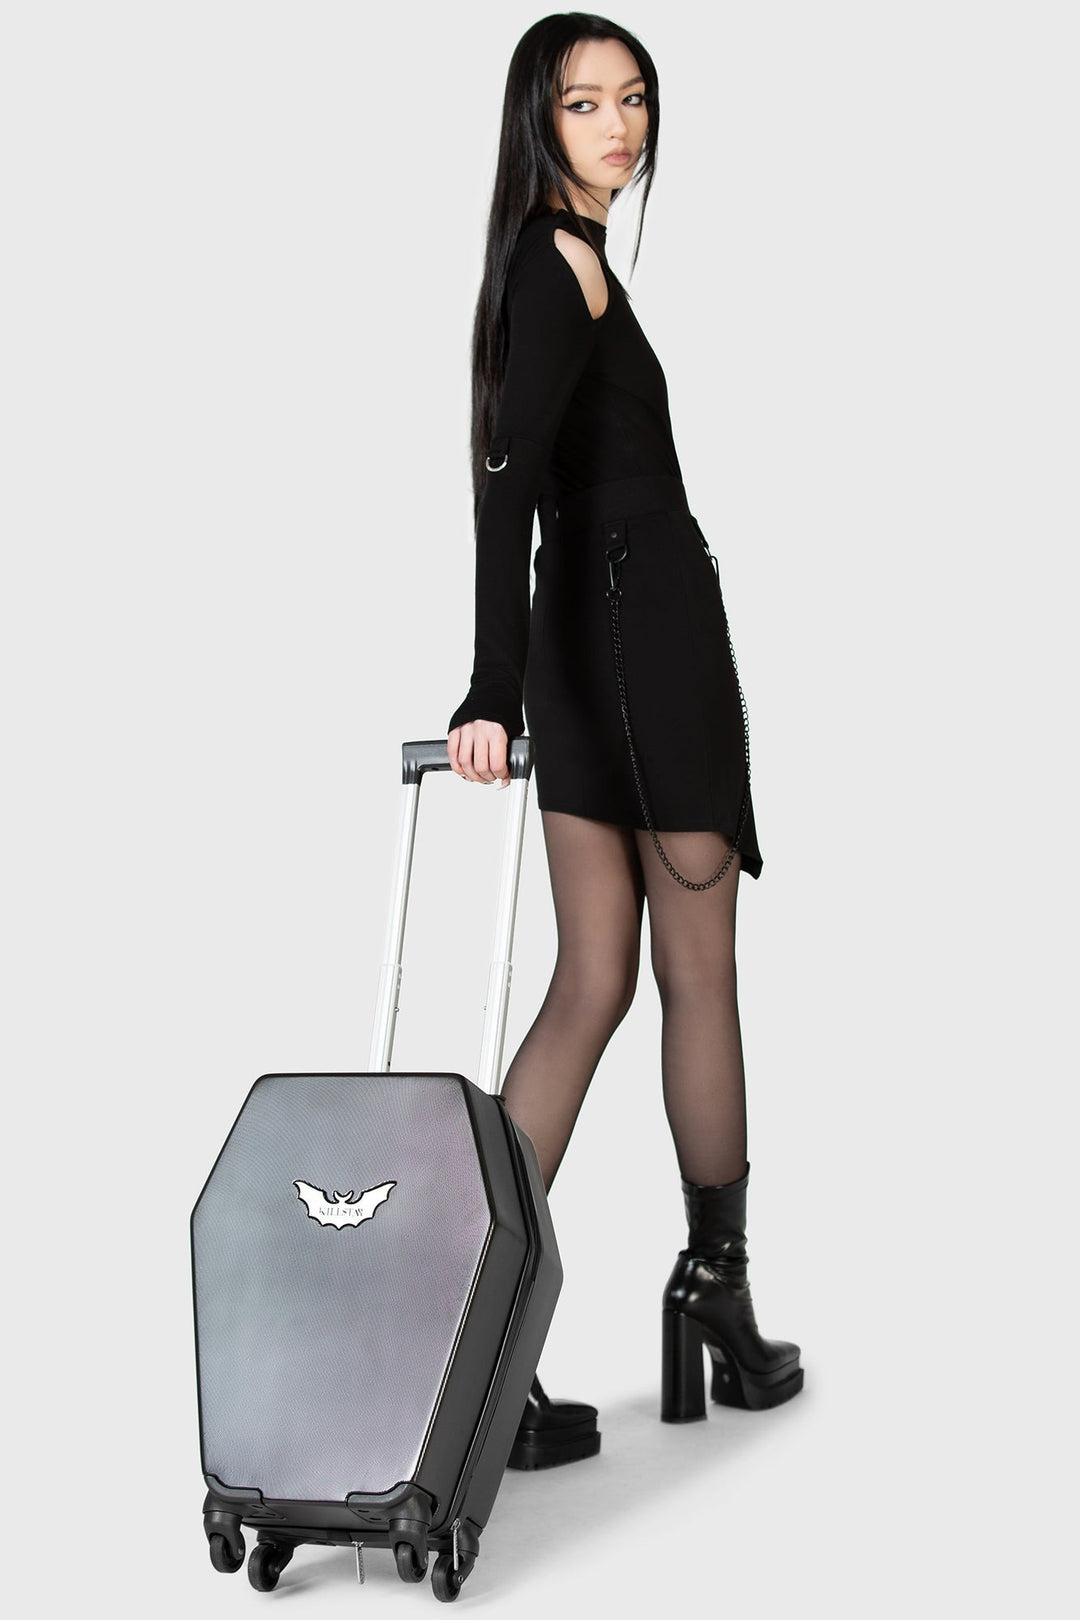 emo carry-on plane bag